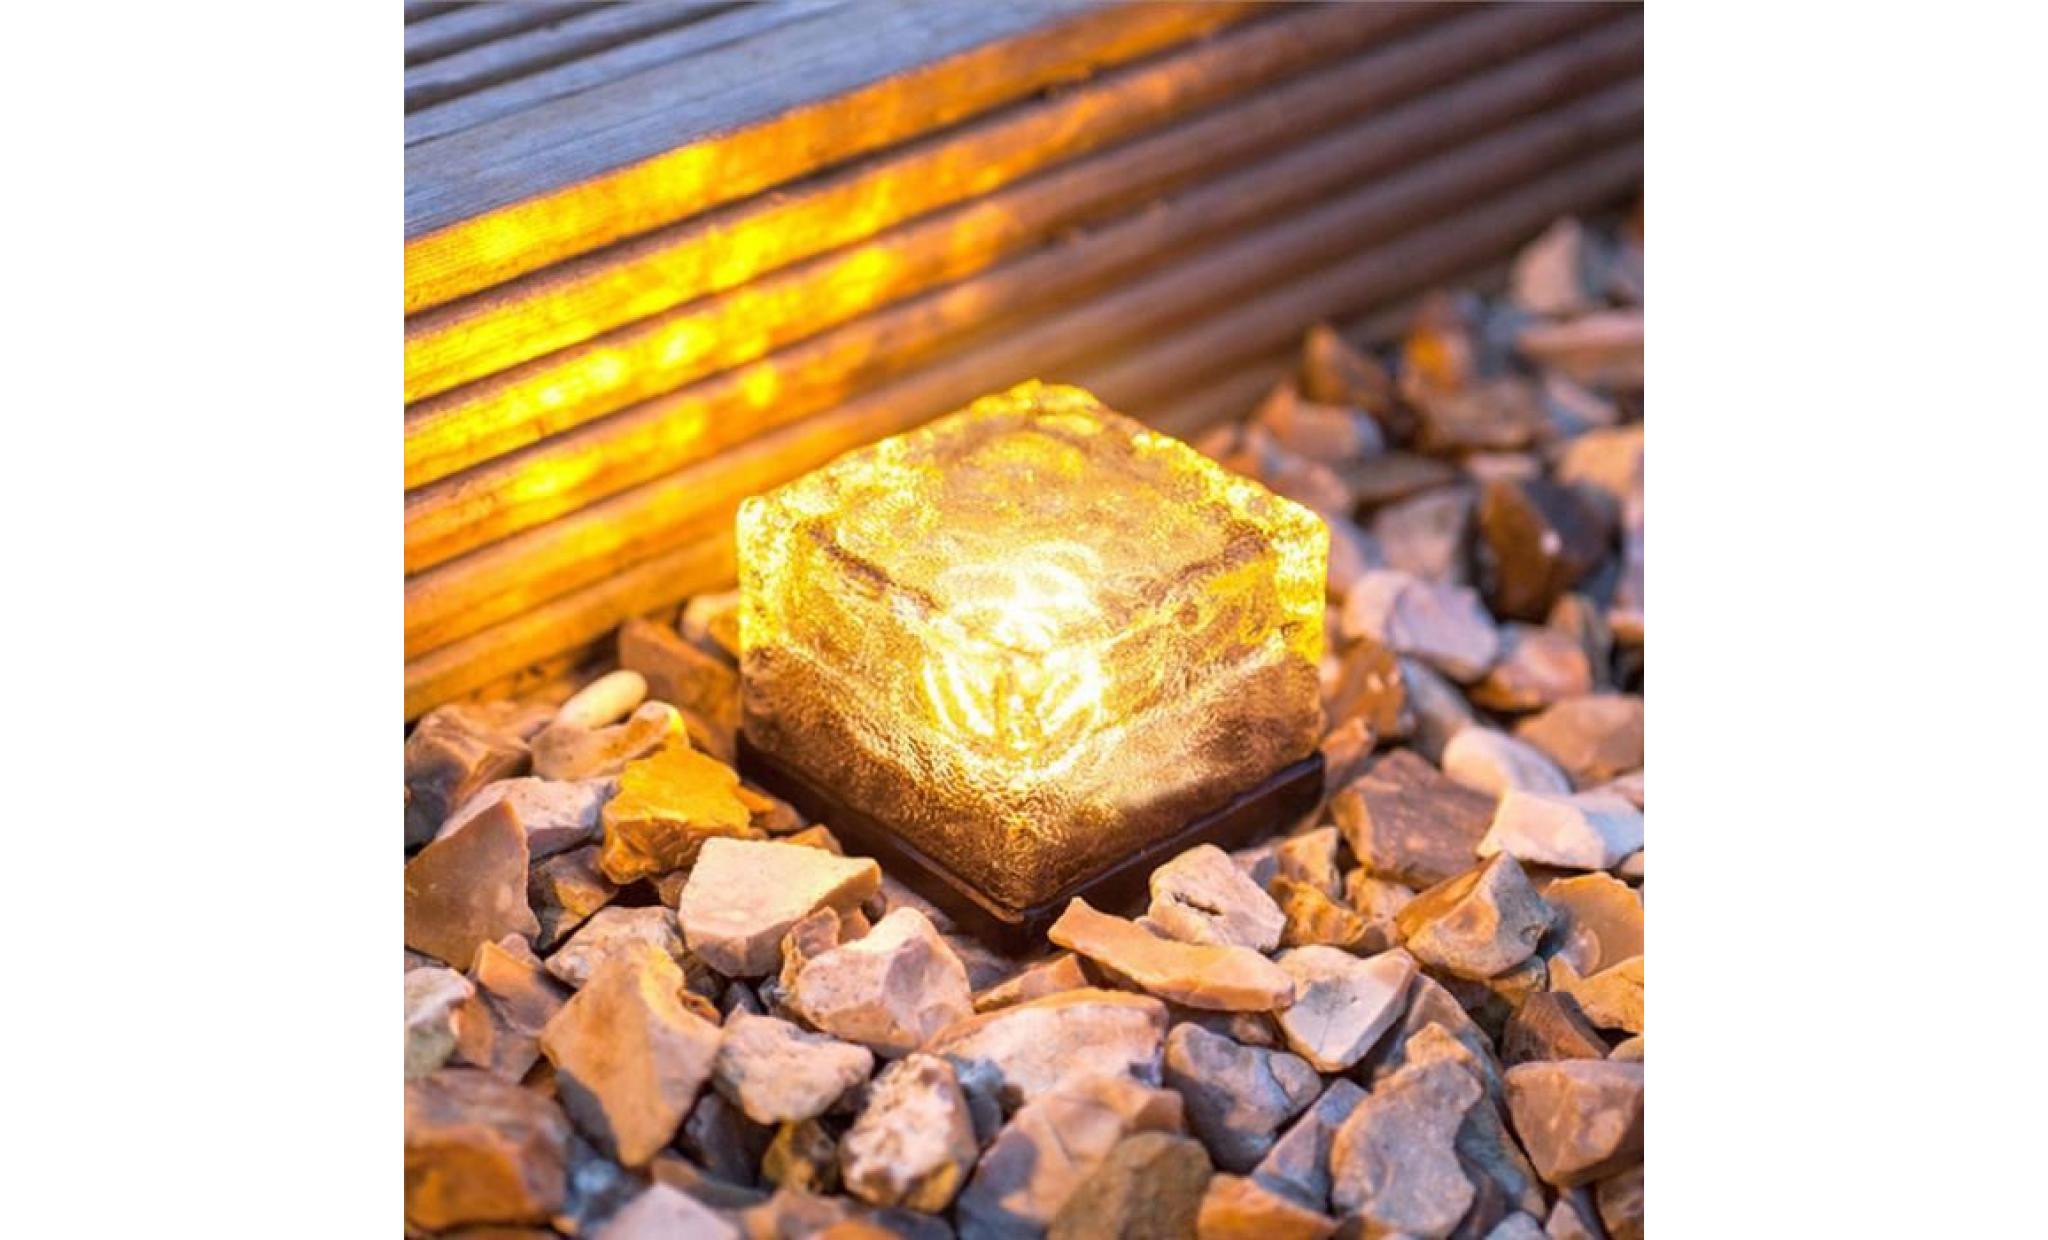 led énergie solaire change de couleur ice cube en cristal extérieur en verre brique hot lights anonywego882